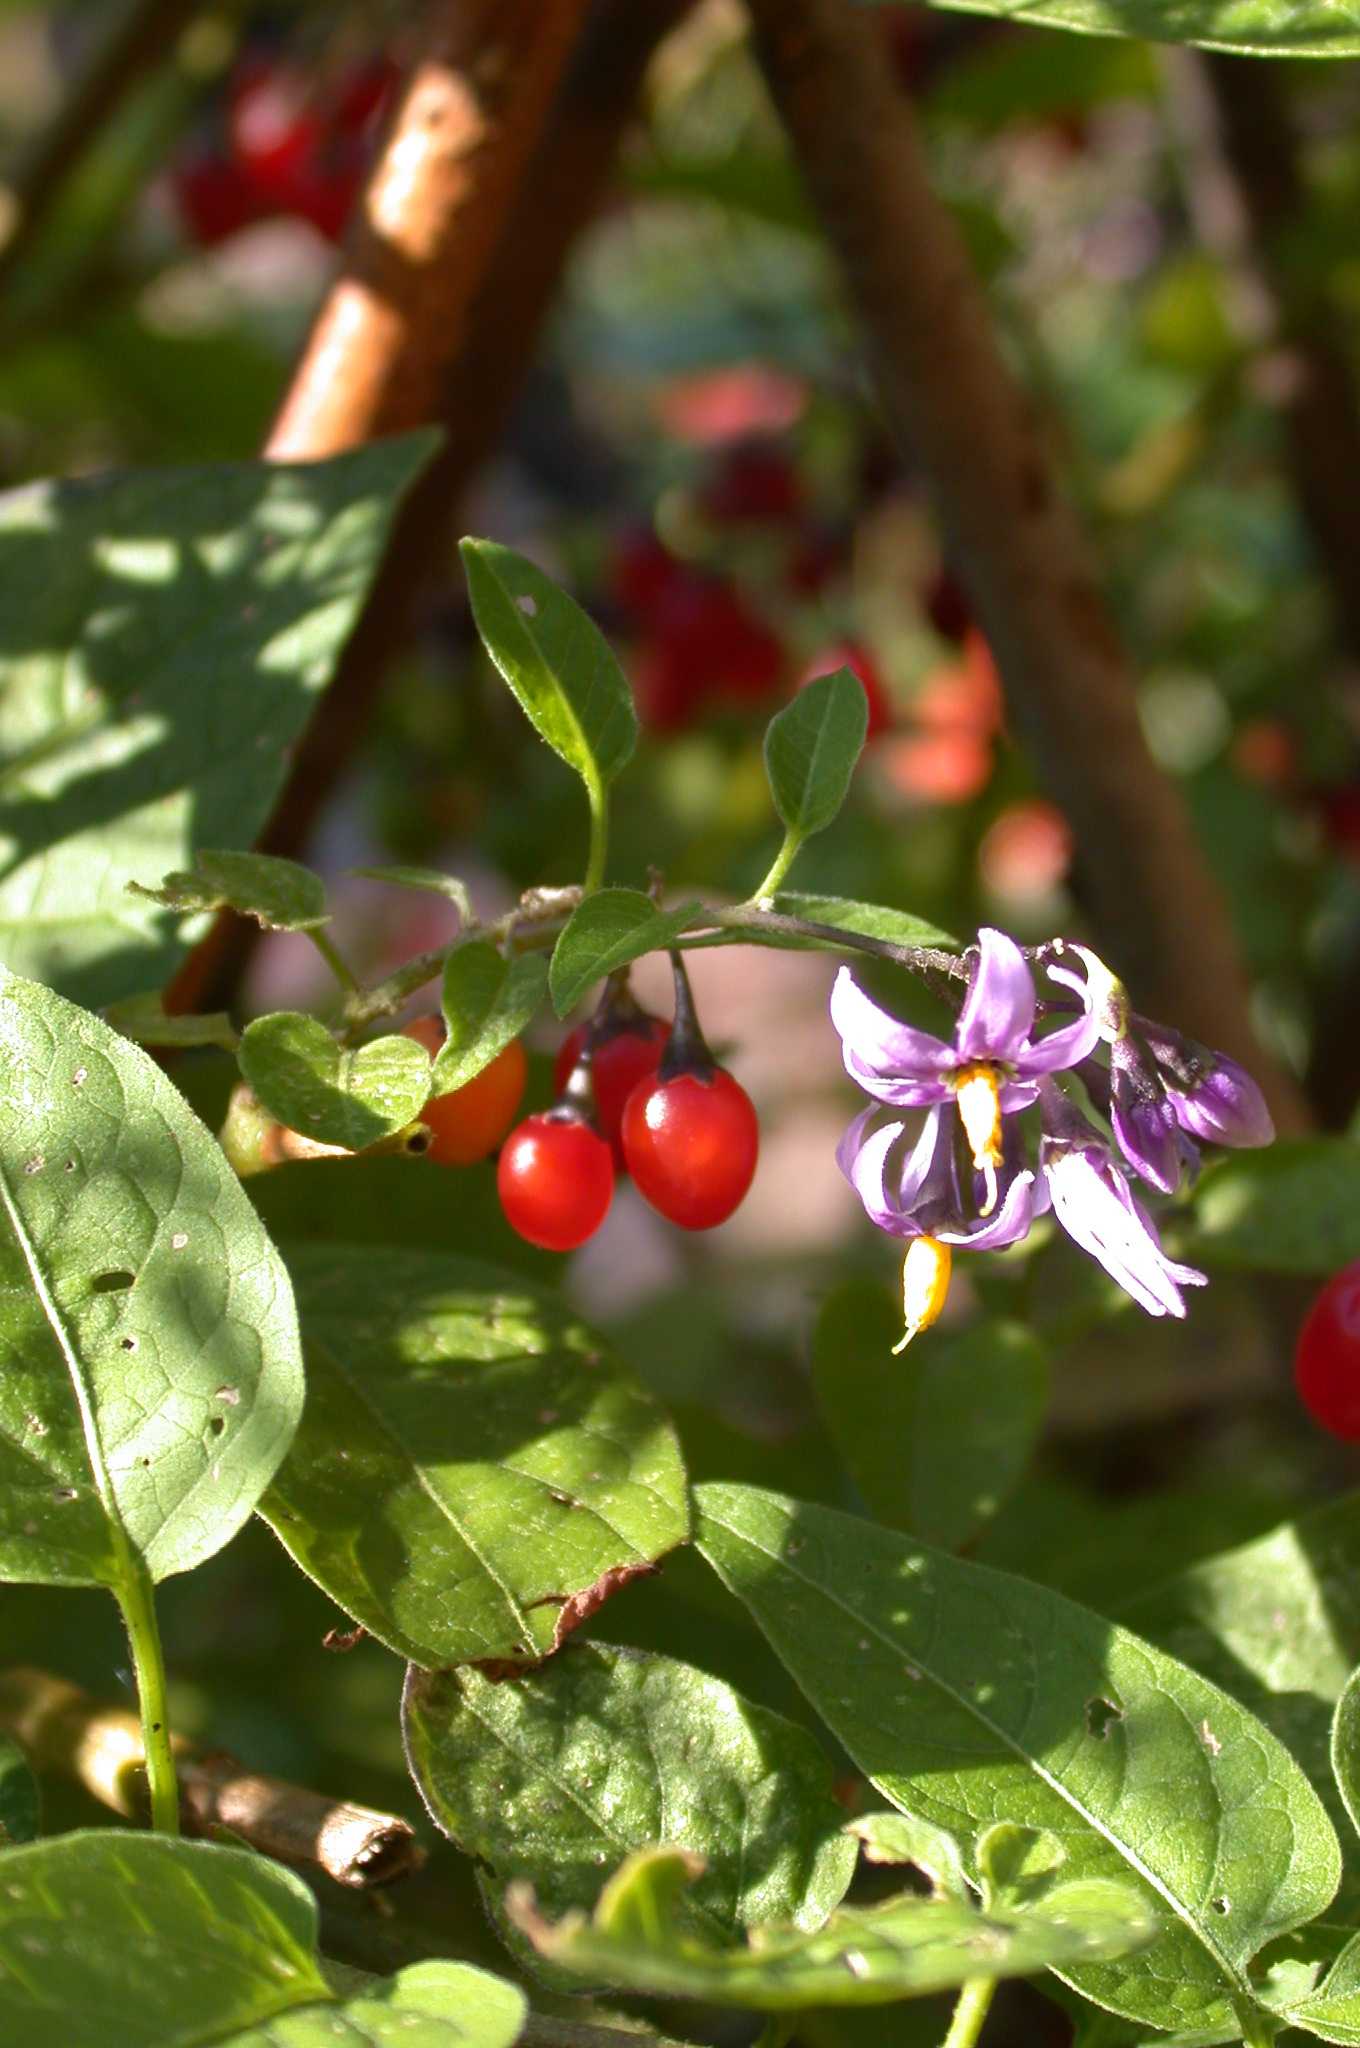 Woody nightshade (Solanum dulcamara) | The Medieval Garden Enclosed